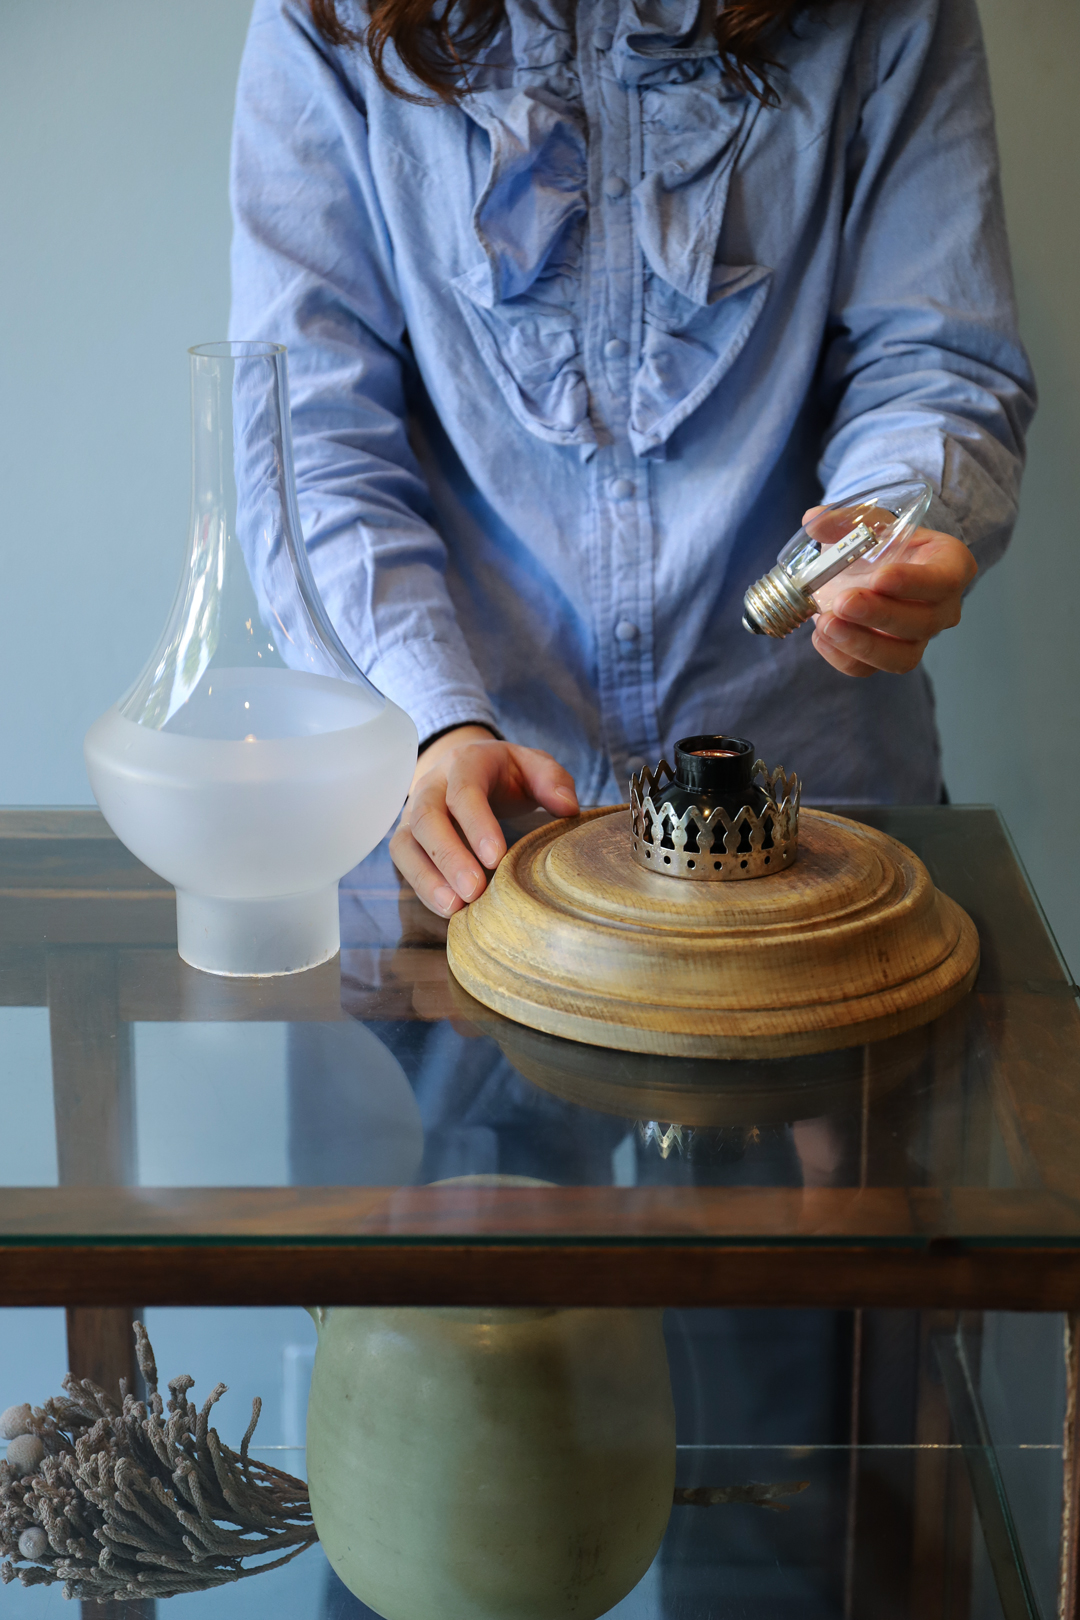 Antique Glass Shade Table Lamp/アンティーク テーブルランプ ガラスシェード 間接照明 シャビーシック ヴィンテージ